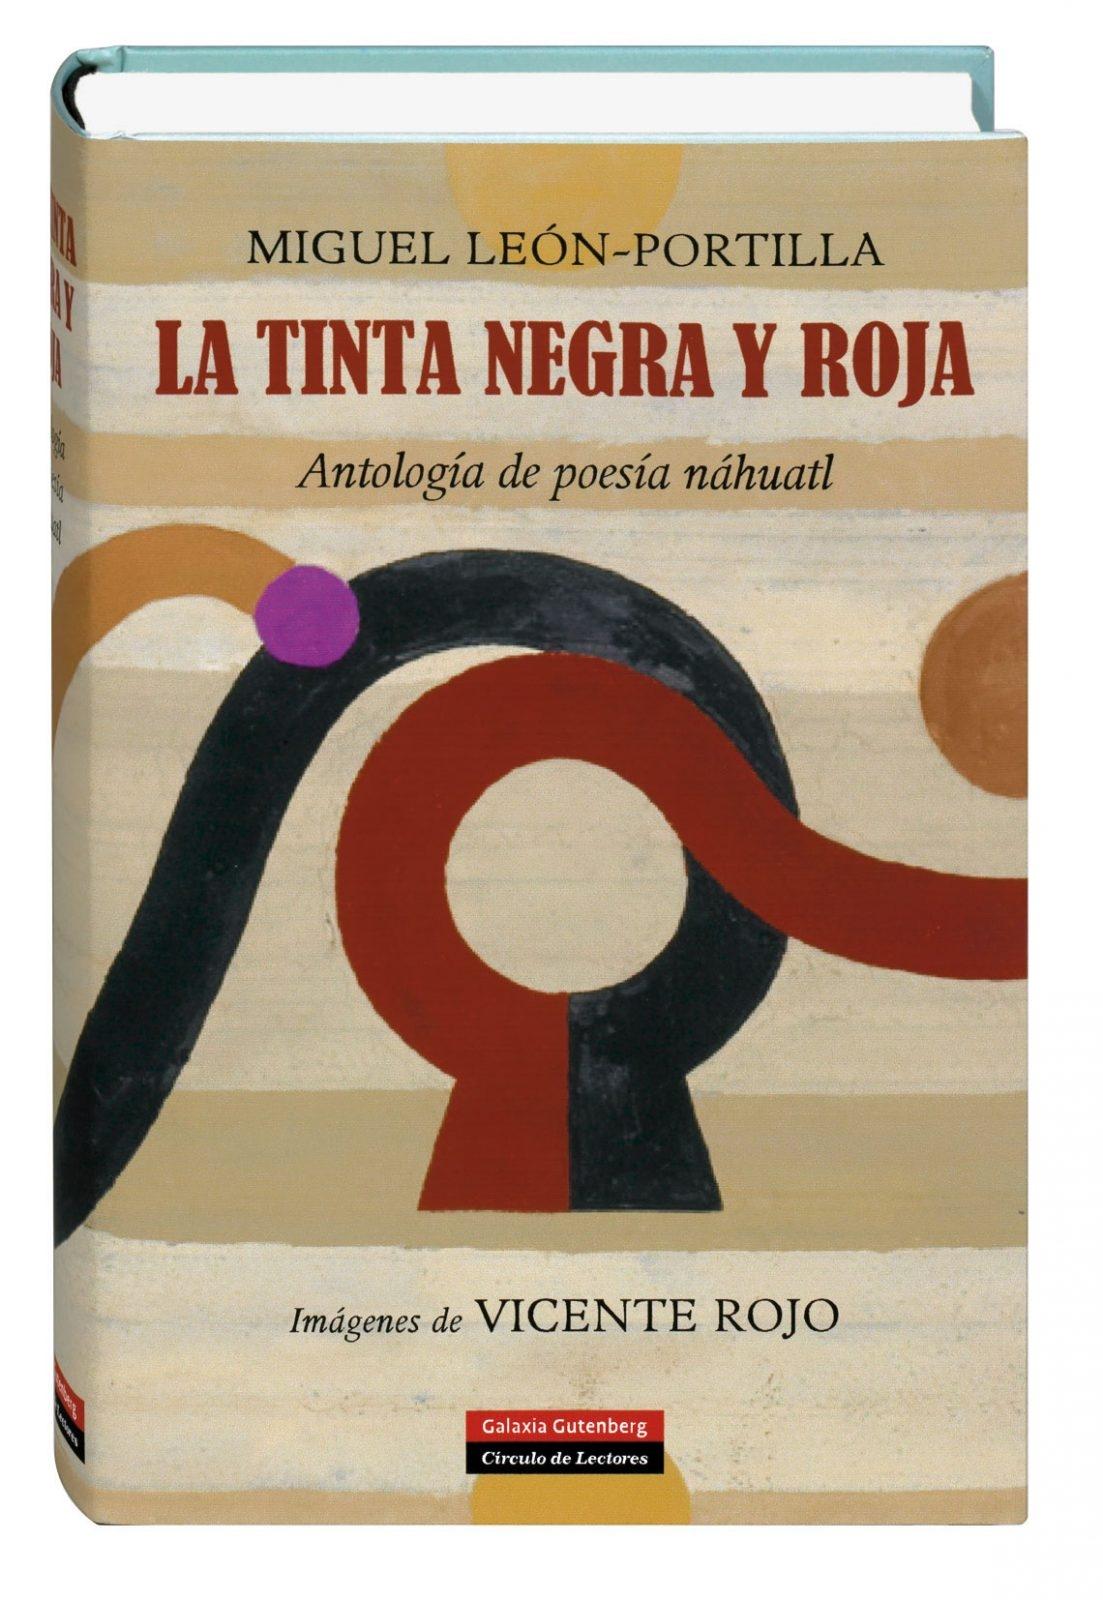 La tinta negra y roja "Antología de poesía náhuatl"